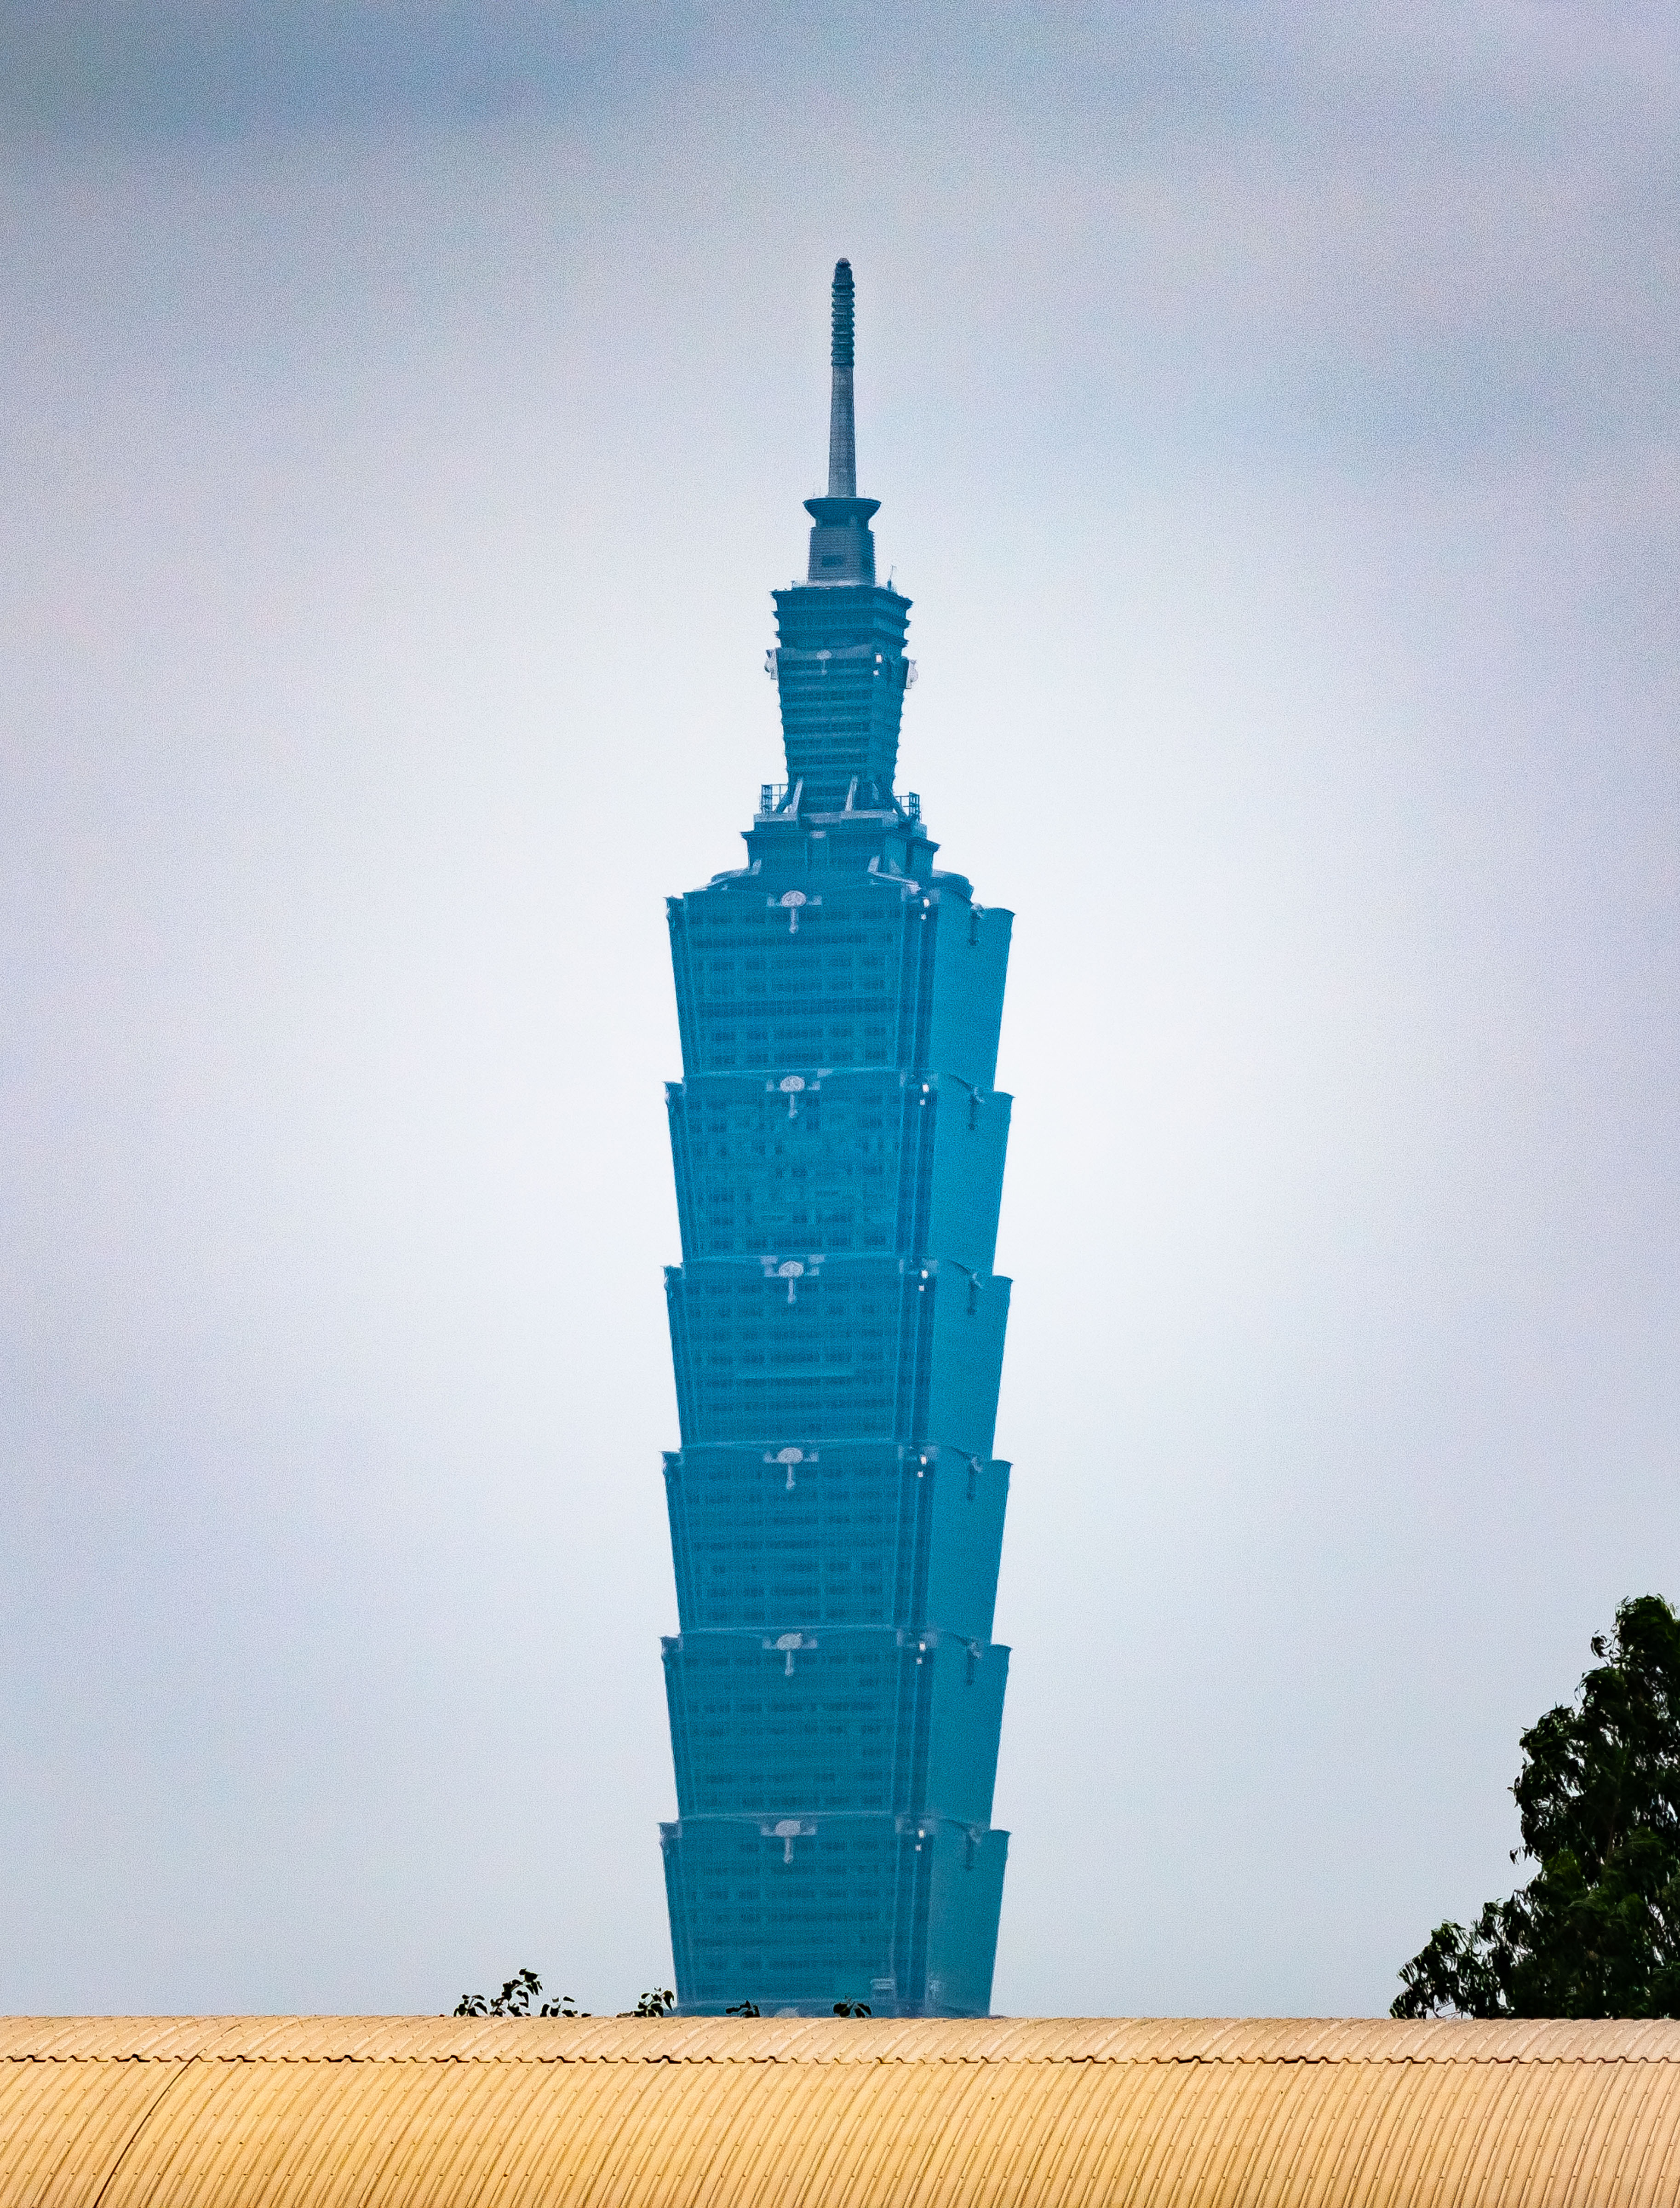 Taiwan, Taipei City (TW-TPE) Prov, Building Tower, 2009, IMG 3960